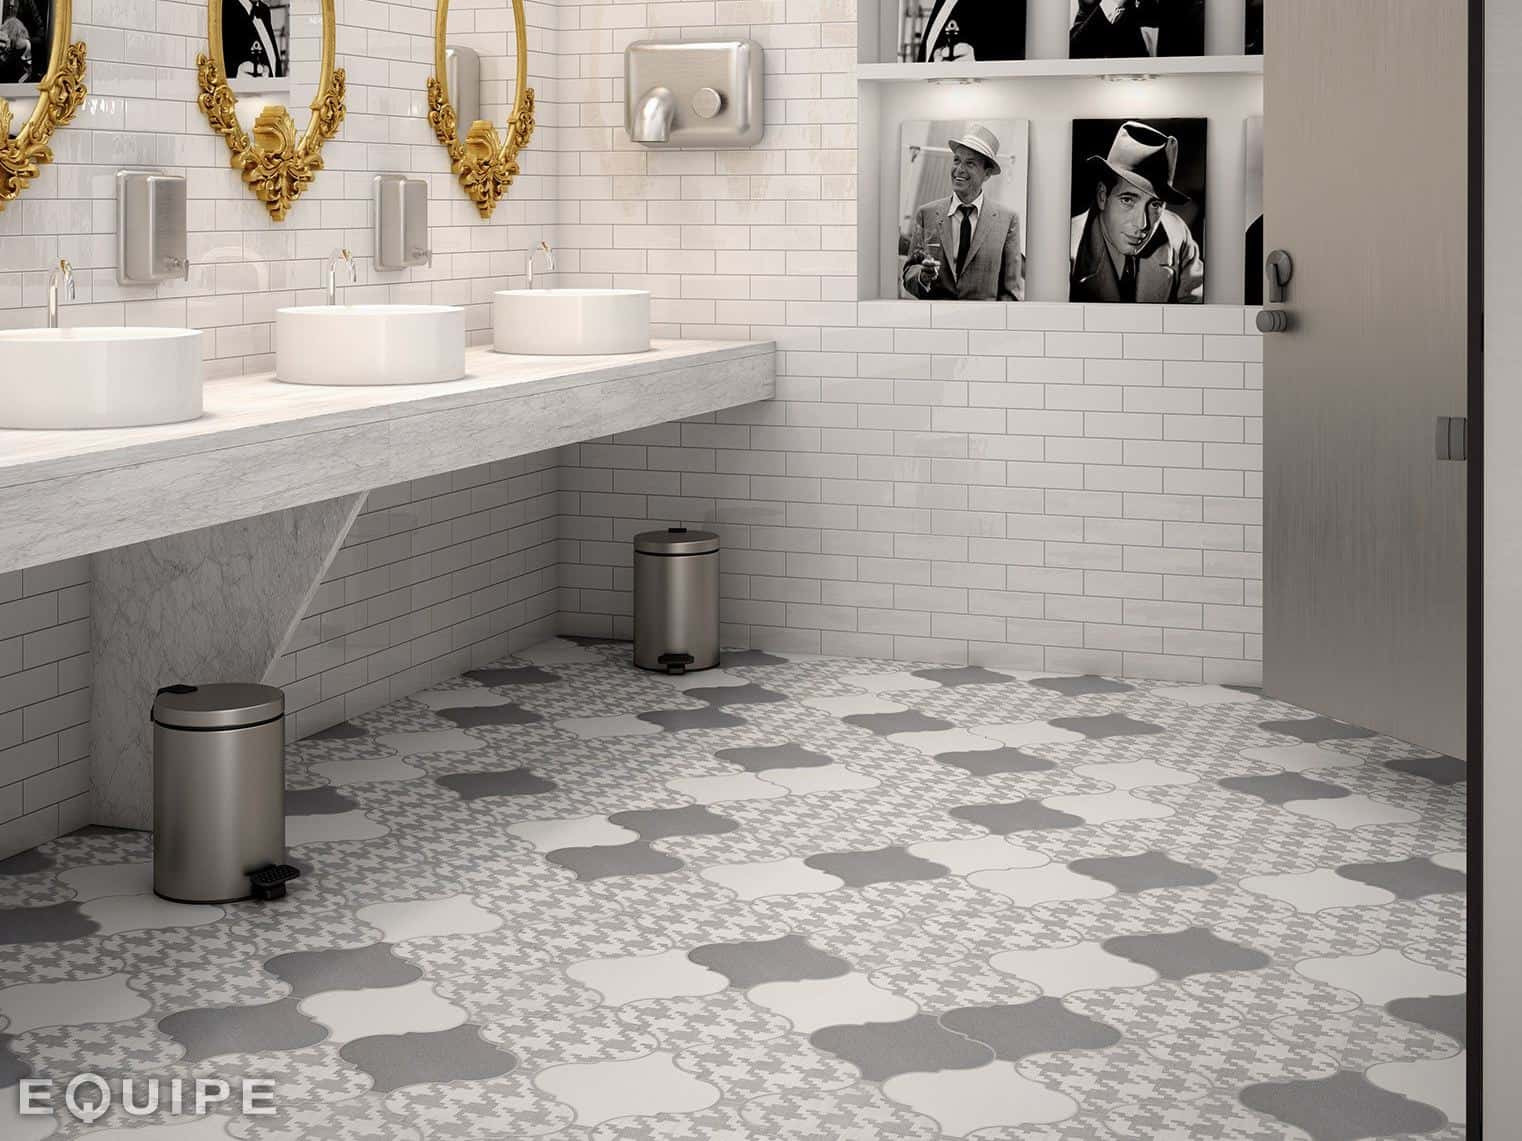 Grey Bathroom Floor Tiles
 21 Arabesque Tile Ideas for Floor Wall and Backsplash